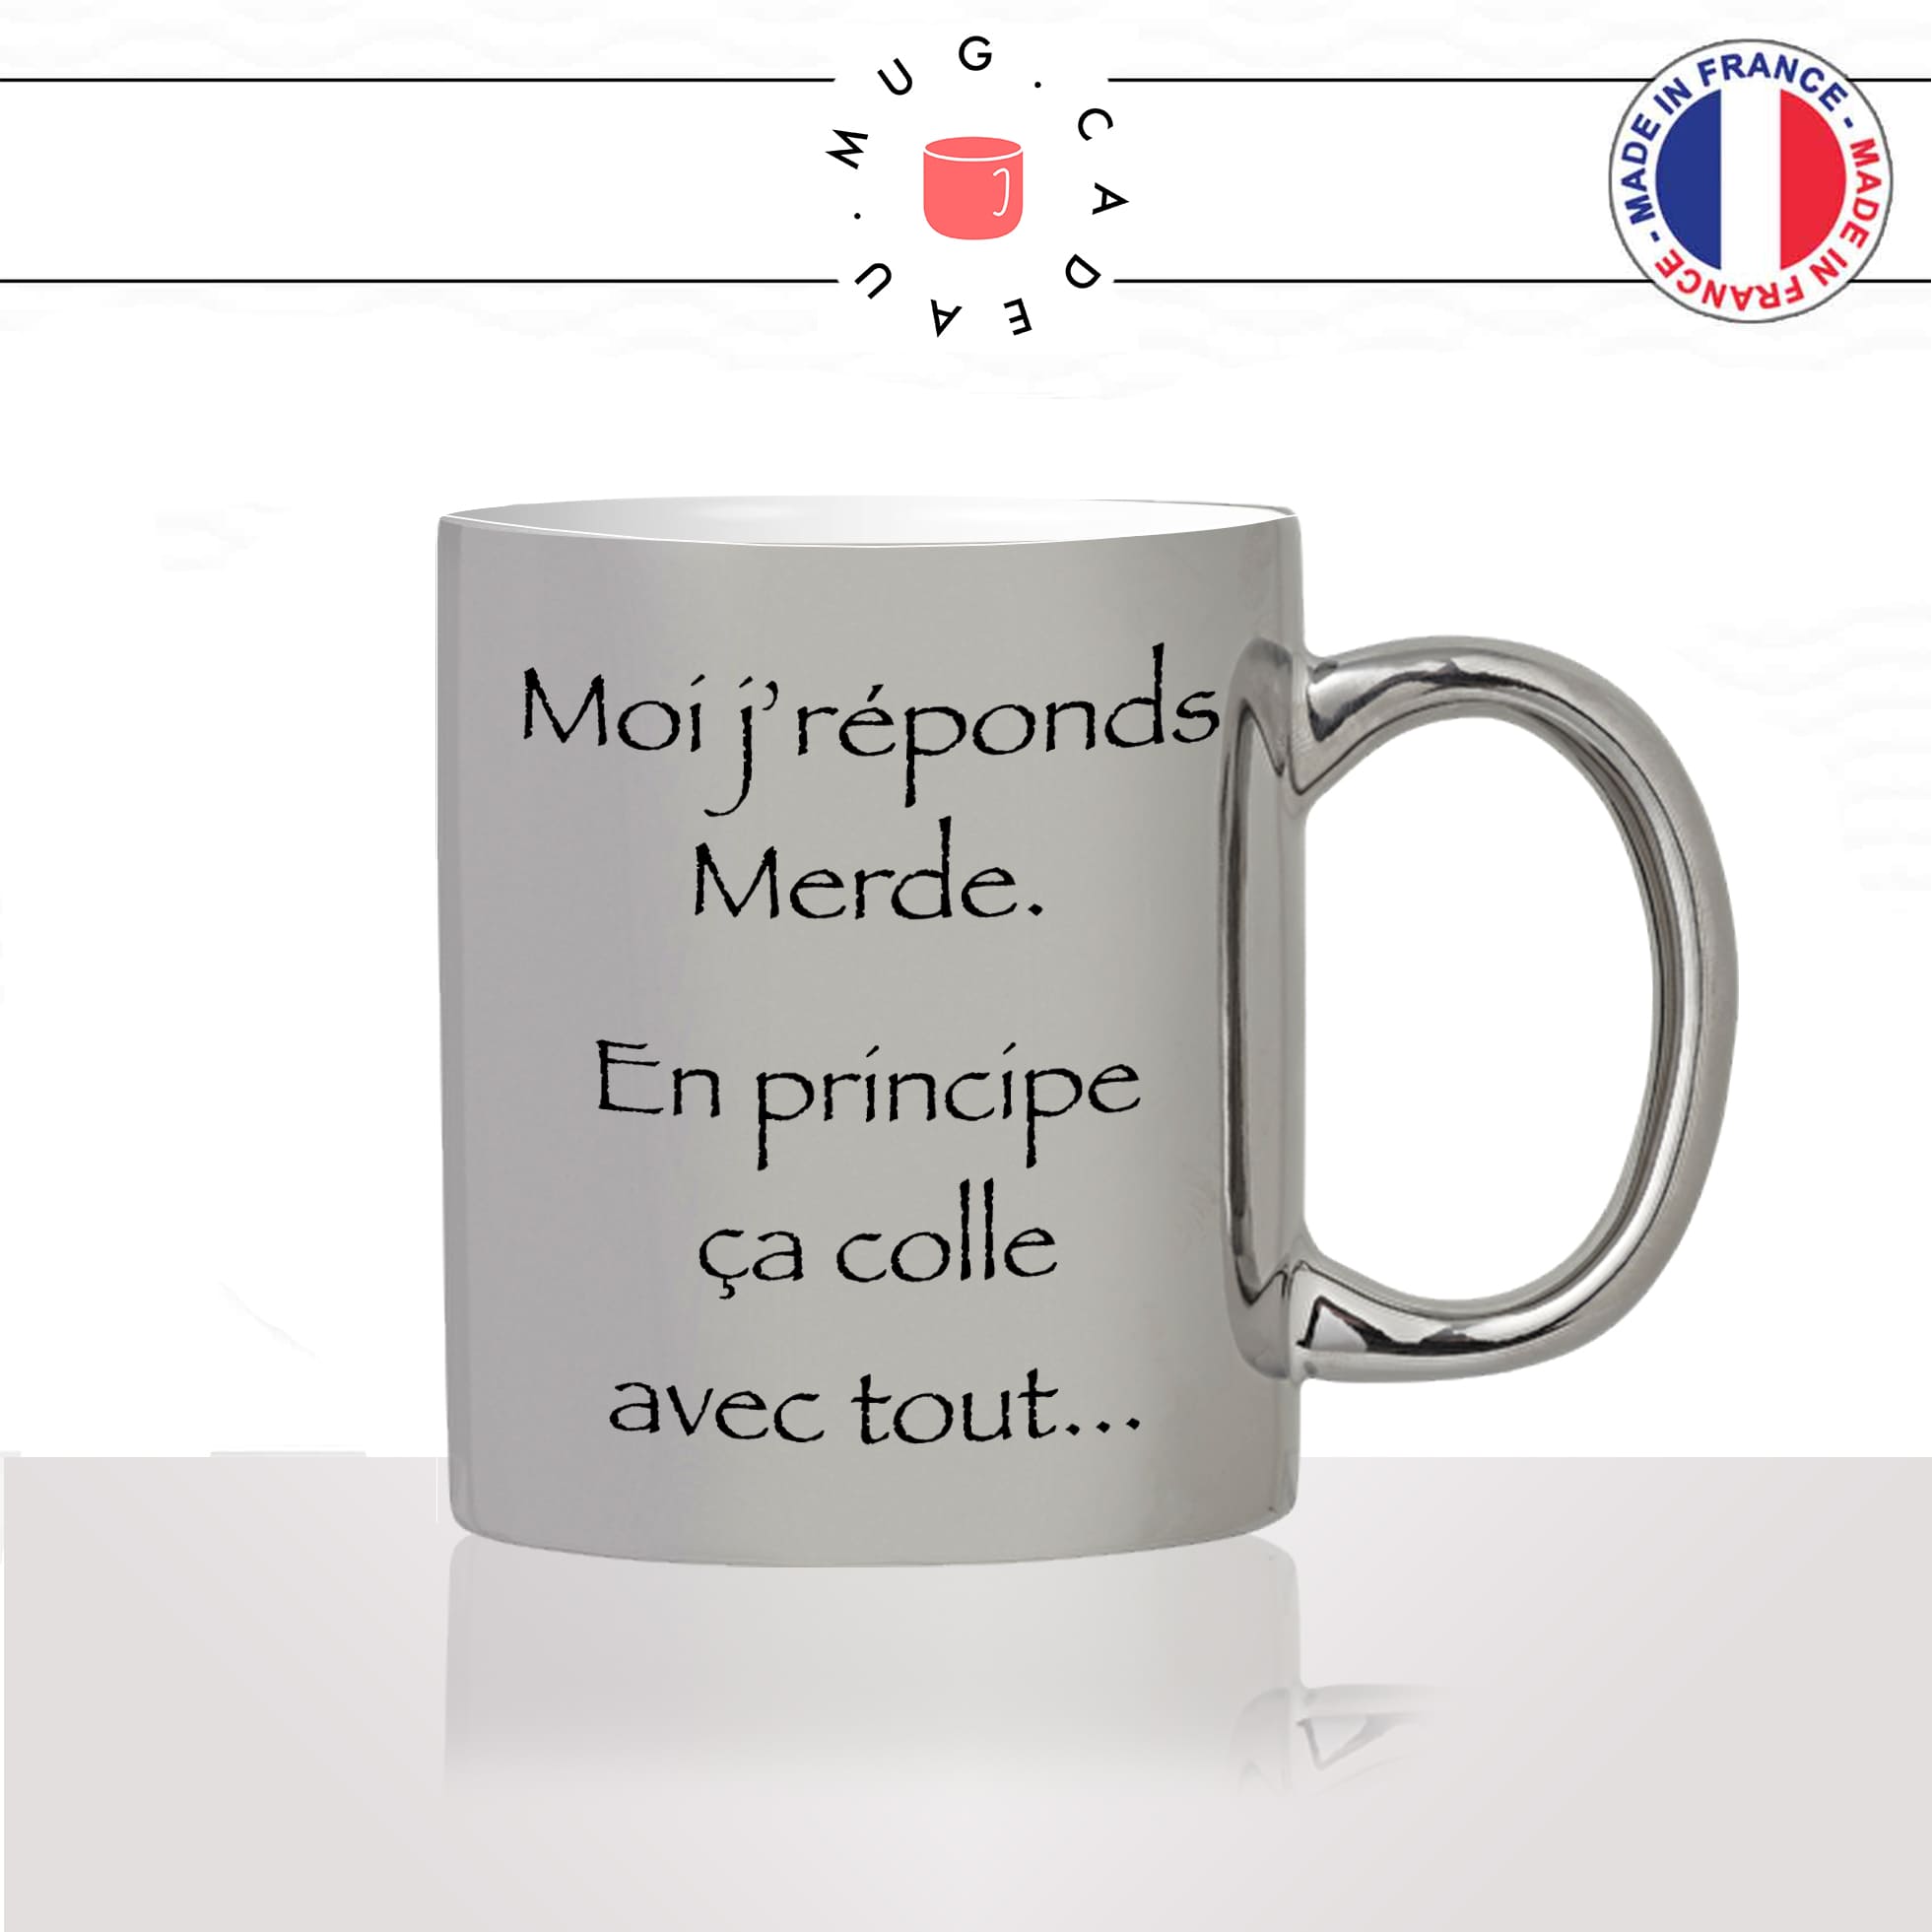 mug-tasse-argent-argenté-silver-série-francaise-kaamelott-arthur-moi-jrépond-merde-leodagan-humour-idée-cadeau-fun-cool-café-thé2